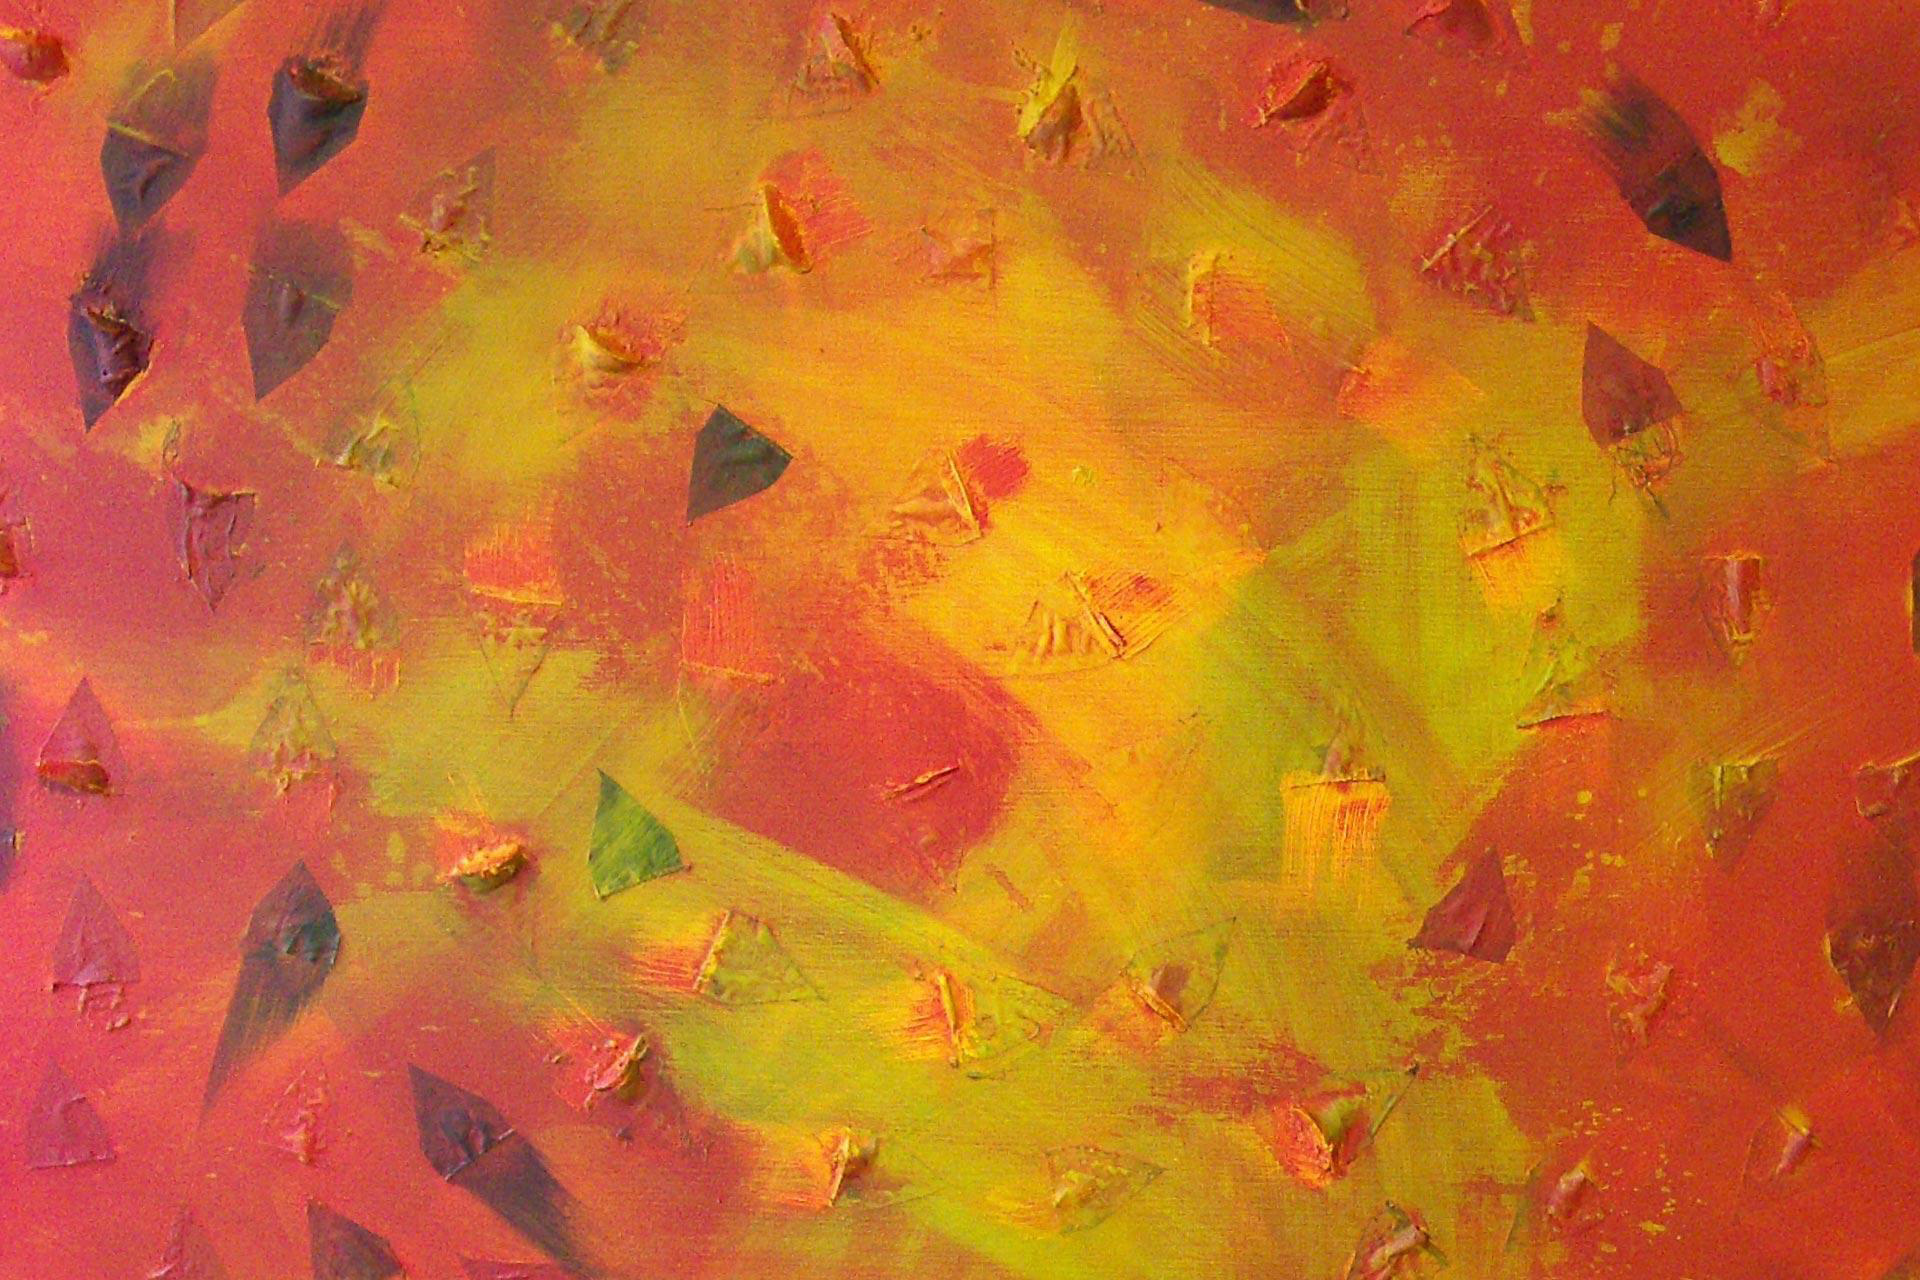 Brighart is een Nederlandse kunstenares. Zij maakt abstracte kunst. Titel van dit krachtig geel/rood/oranje schilderij is: Individuen